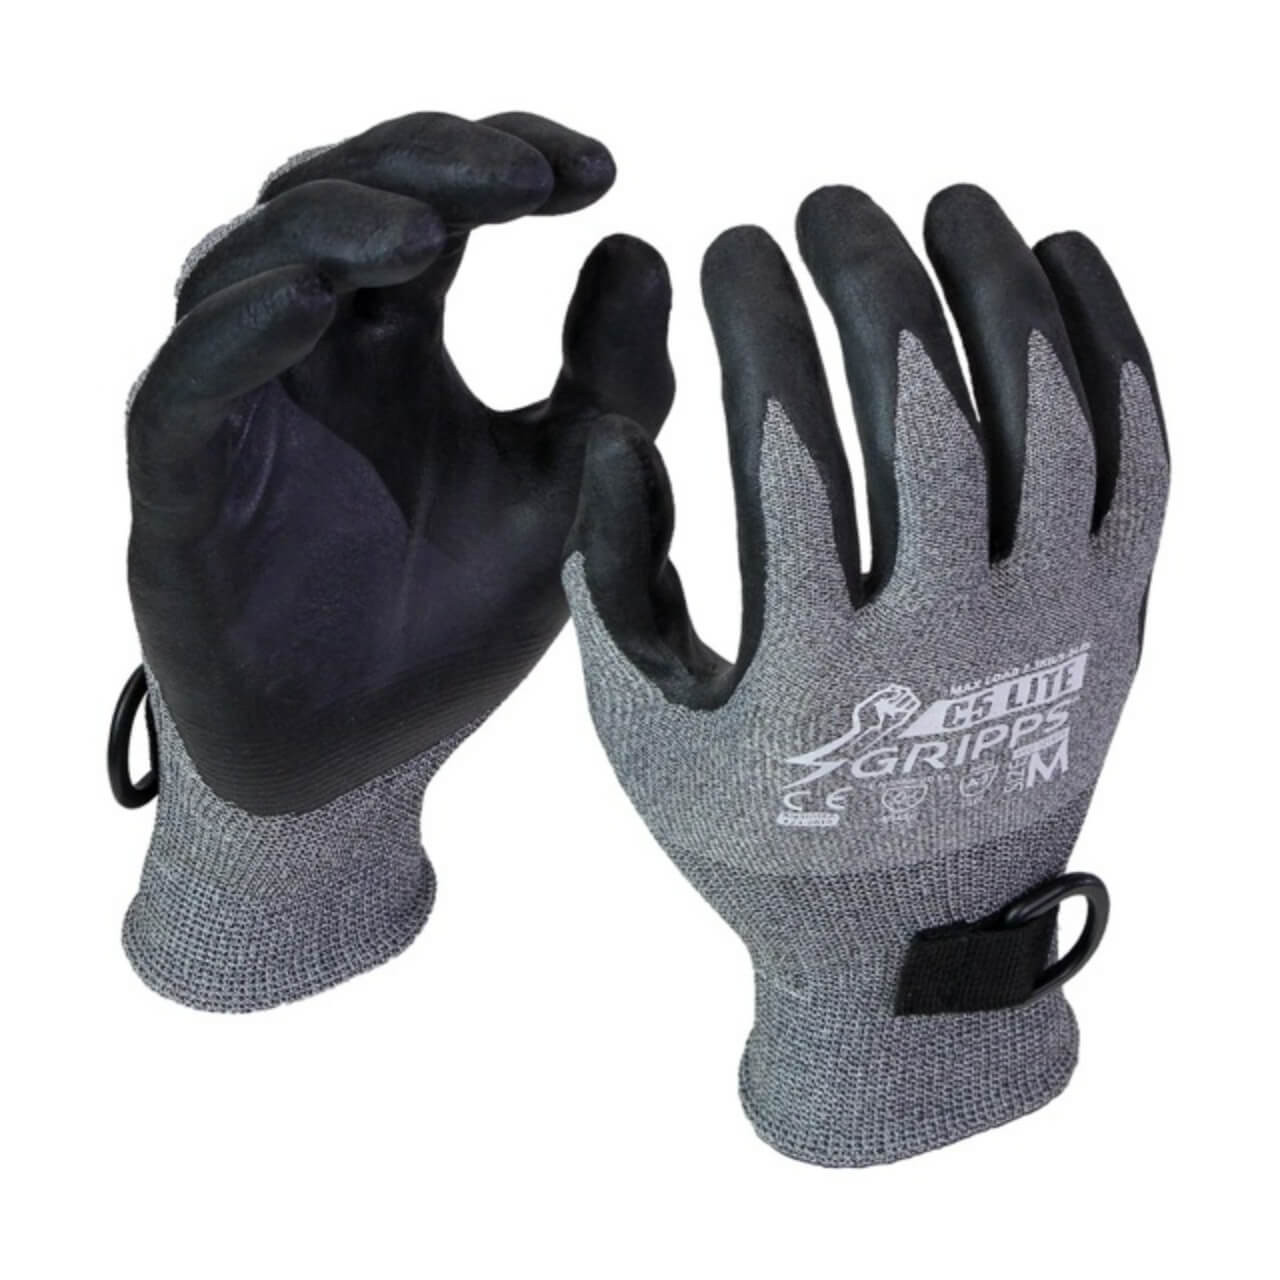 GRIPPS C5 FlexiLite MKII Gloves 2.3kg Max Load